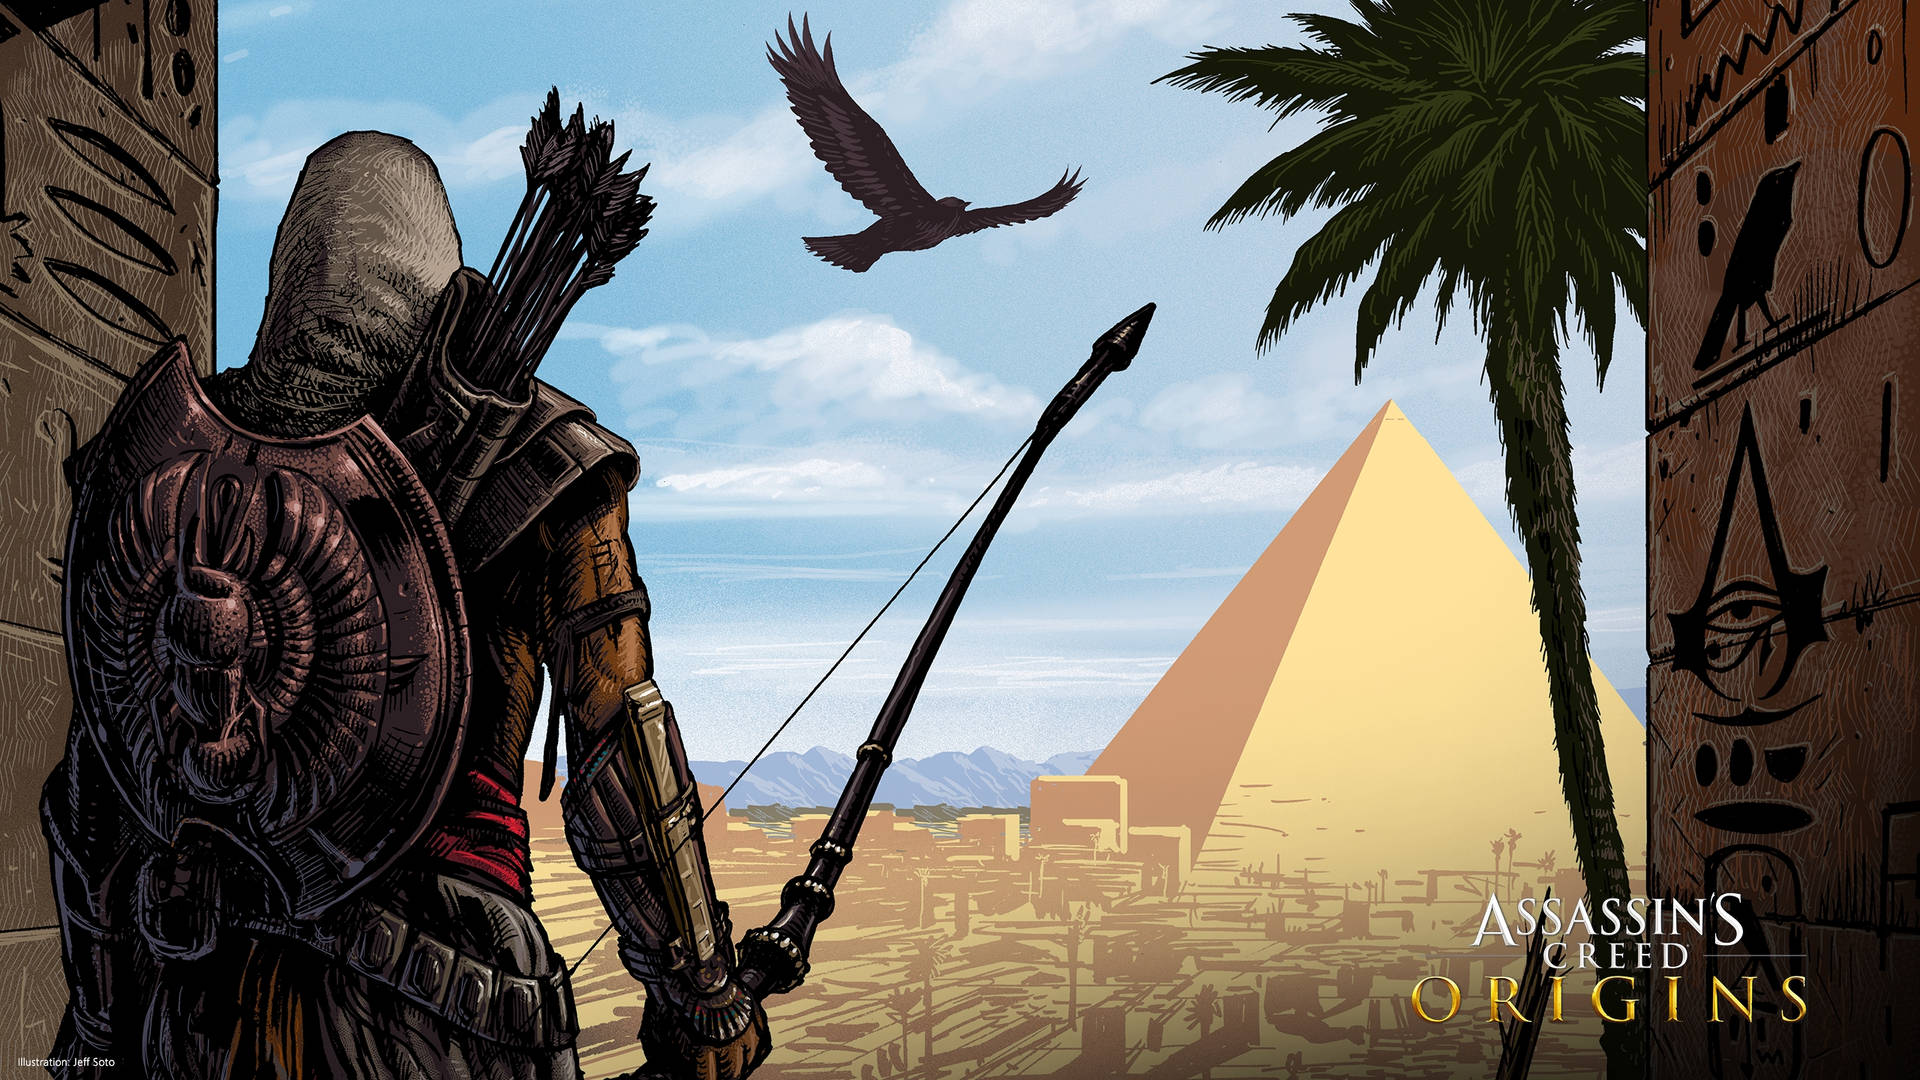 Assassins Creed Origins Bayek In The Desert